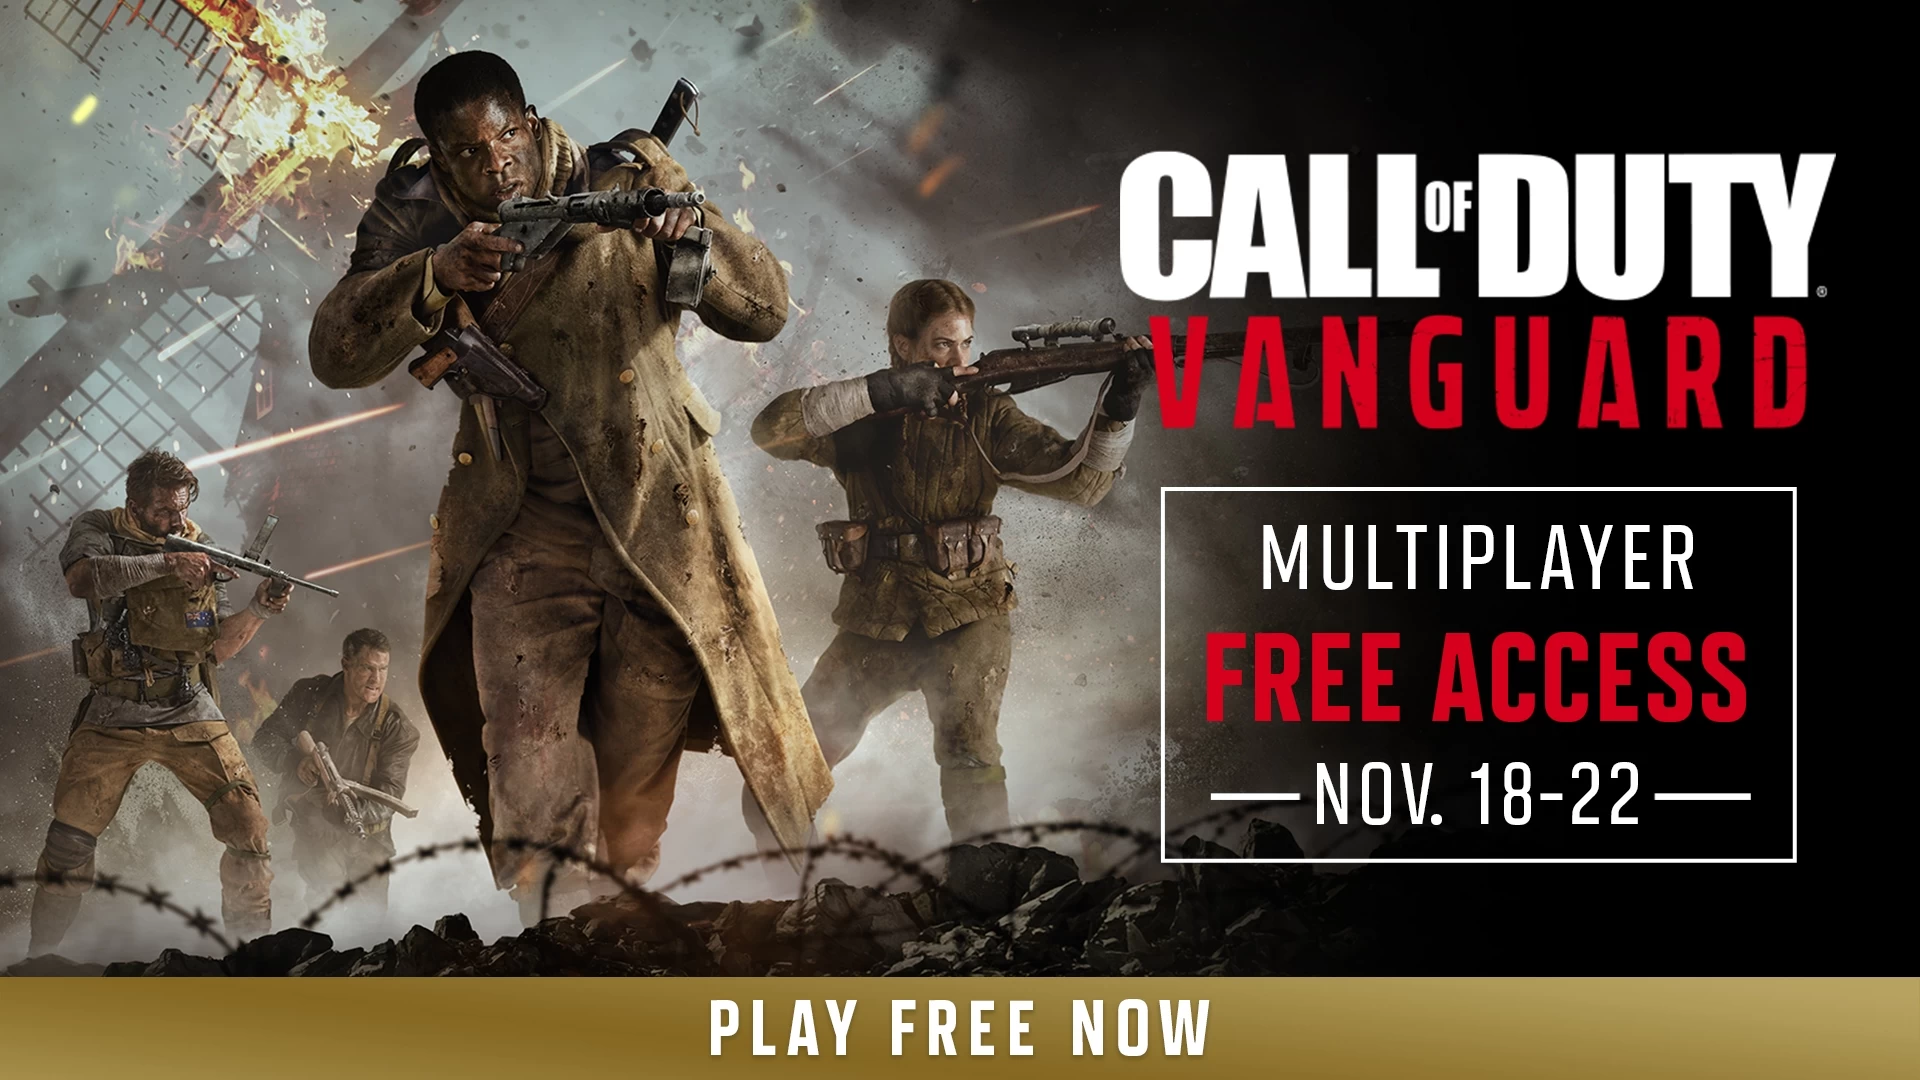 Tout le monde peut jouer à Call of Duty : Vanguard gratuitement jusqu'au 22 novembre